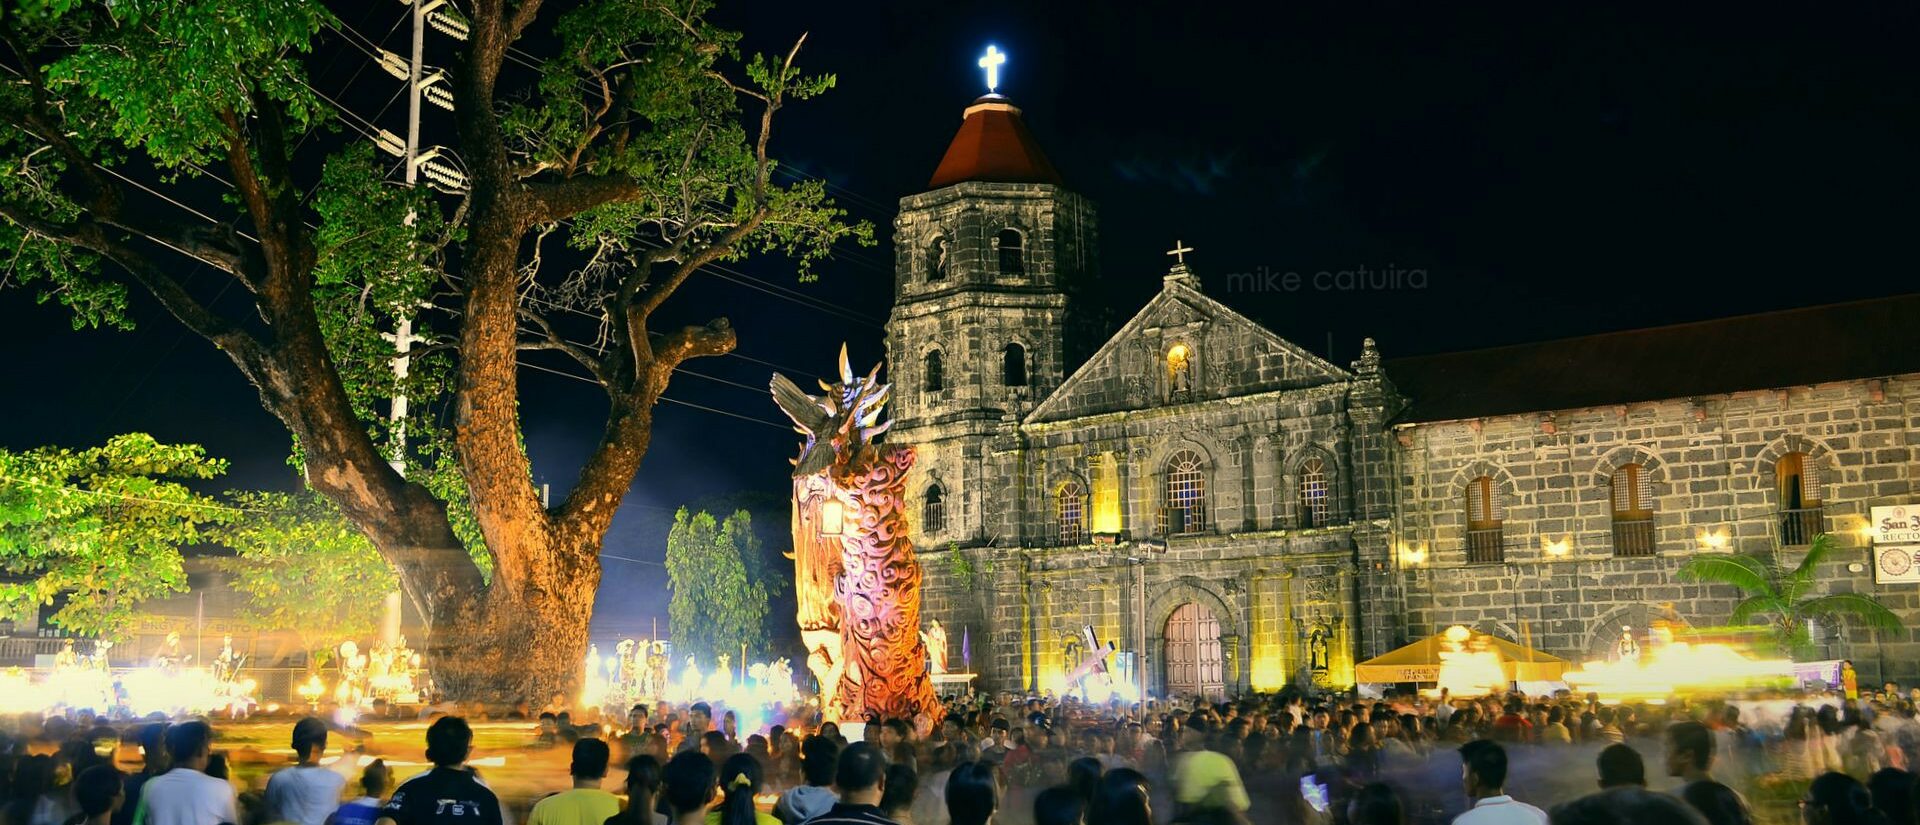 Le christianisme est arrivé aux Philippines il y a 500 ans | © Mike Anthony Catuira/Flickr/CC BY 2.0